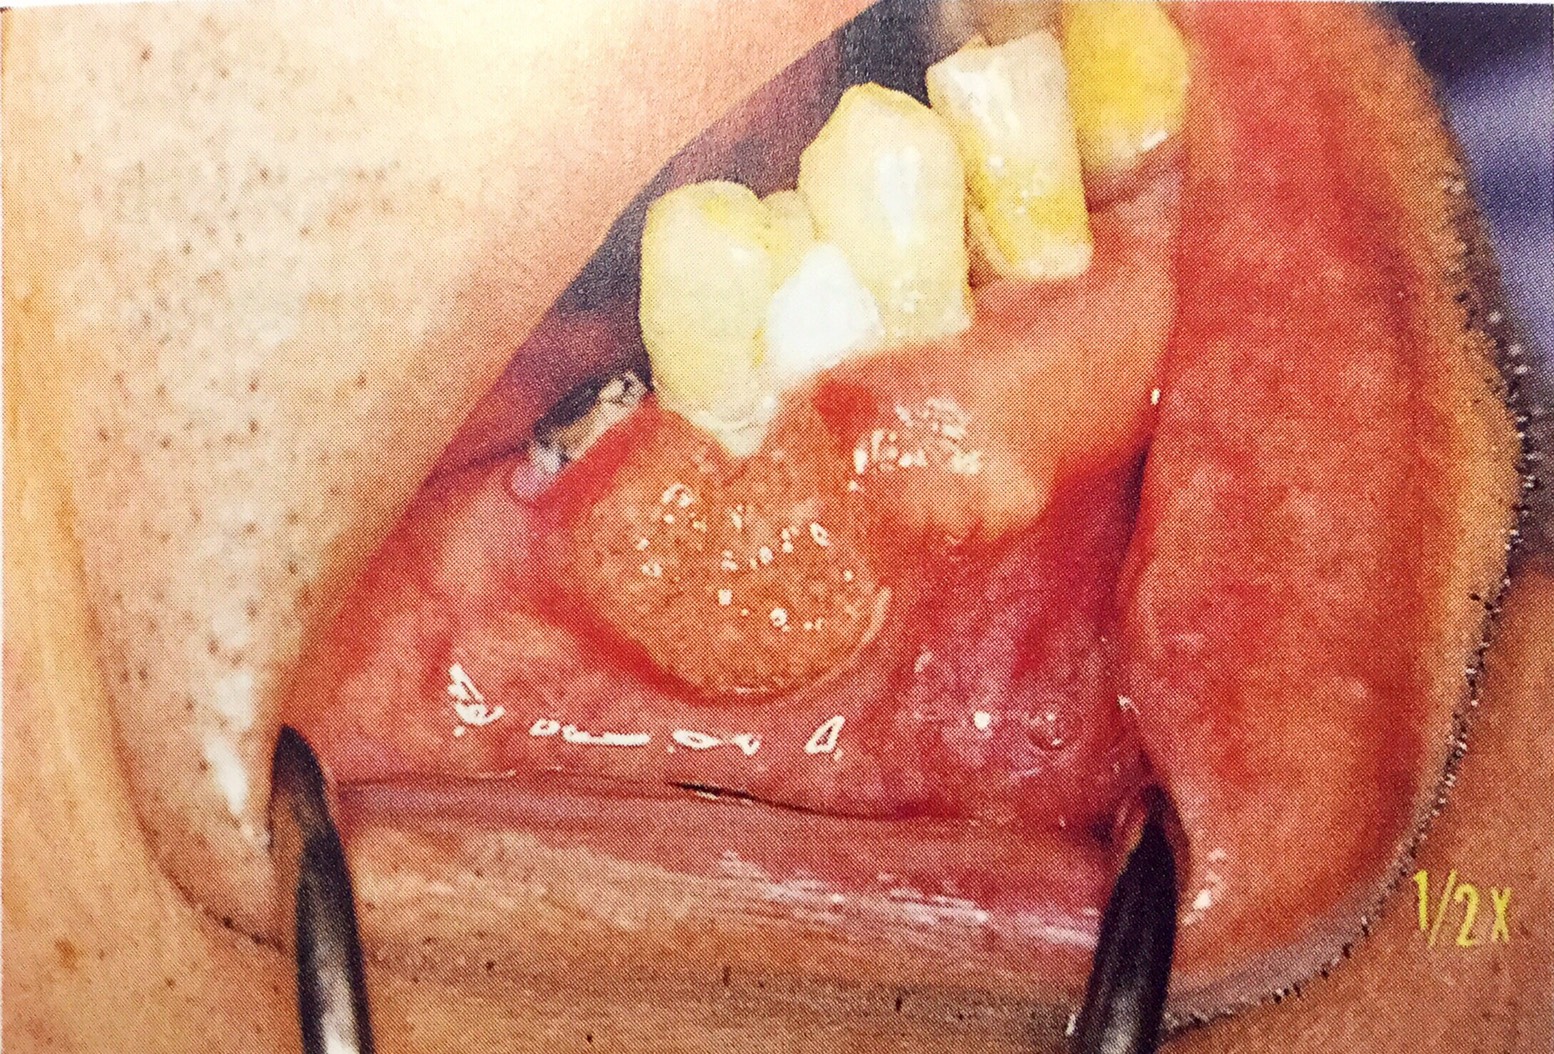 歯肉癌